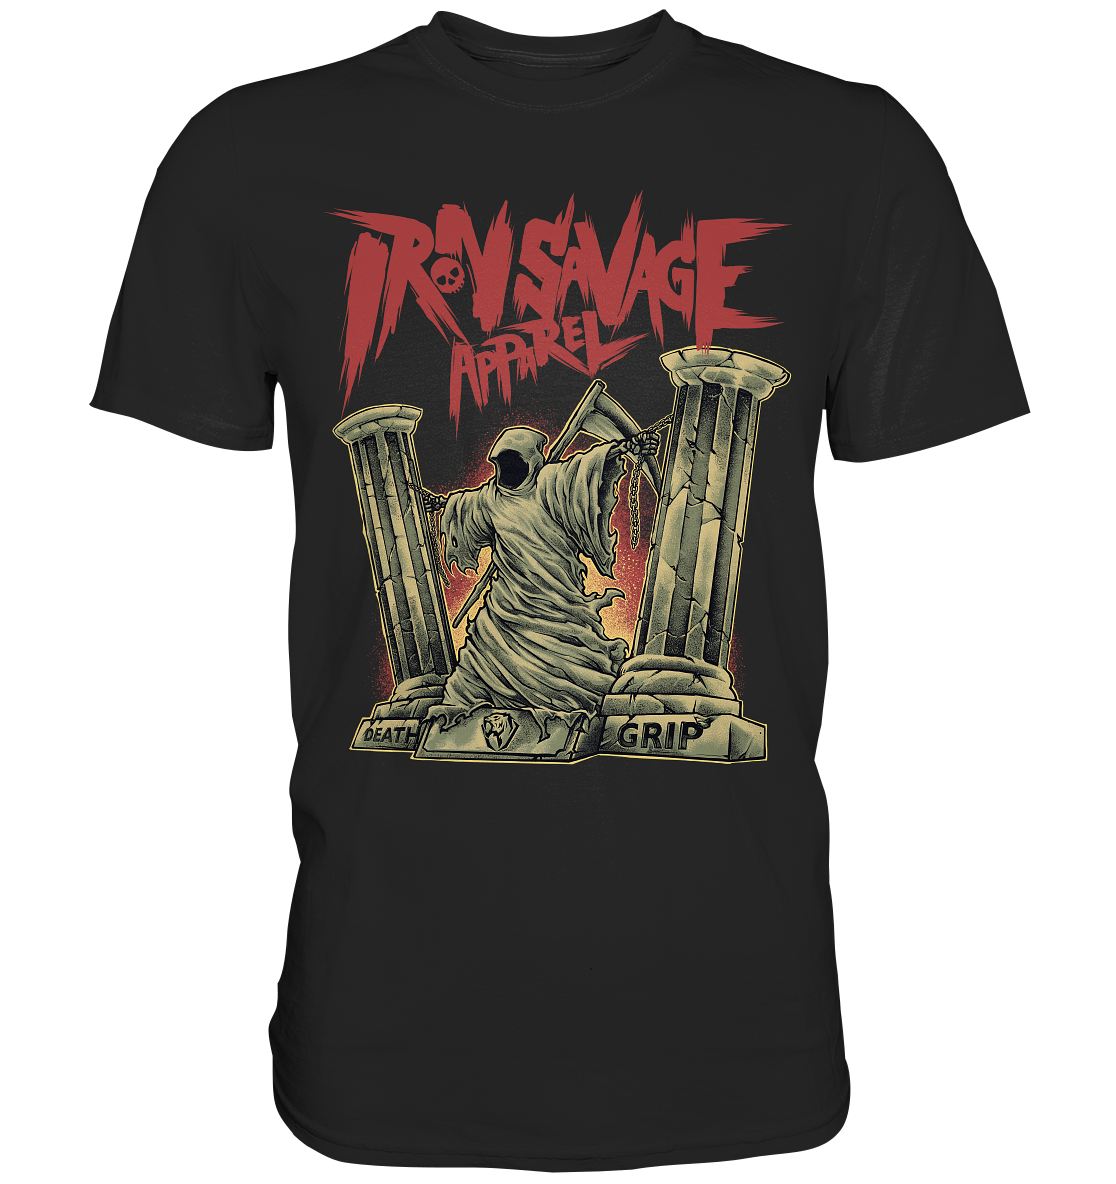 Death Grip T-shirt (EU)